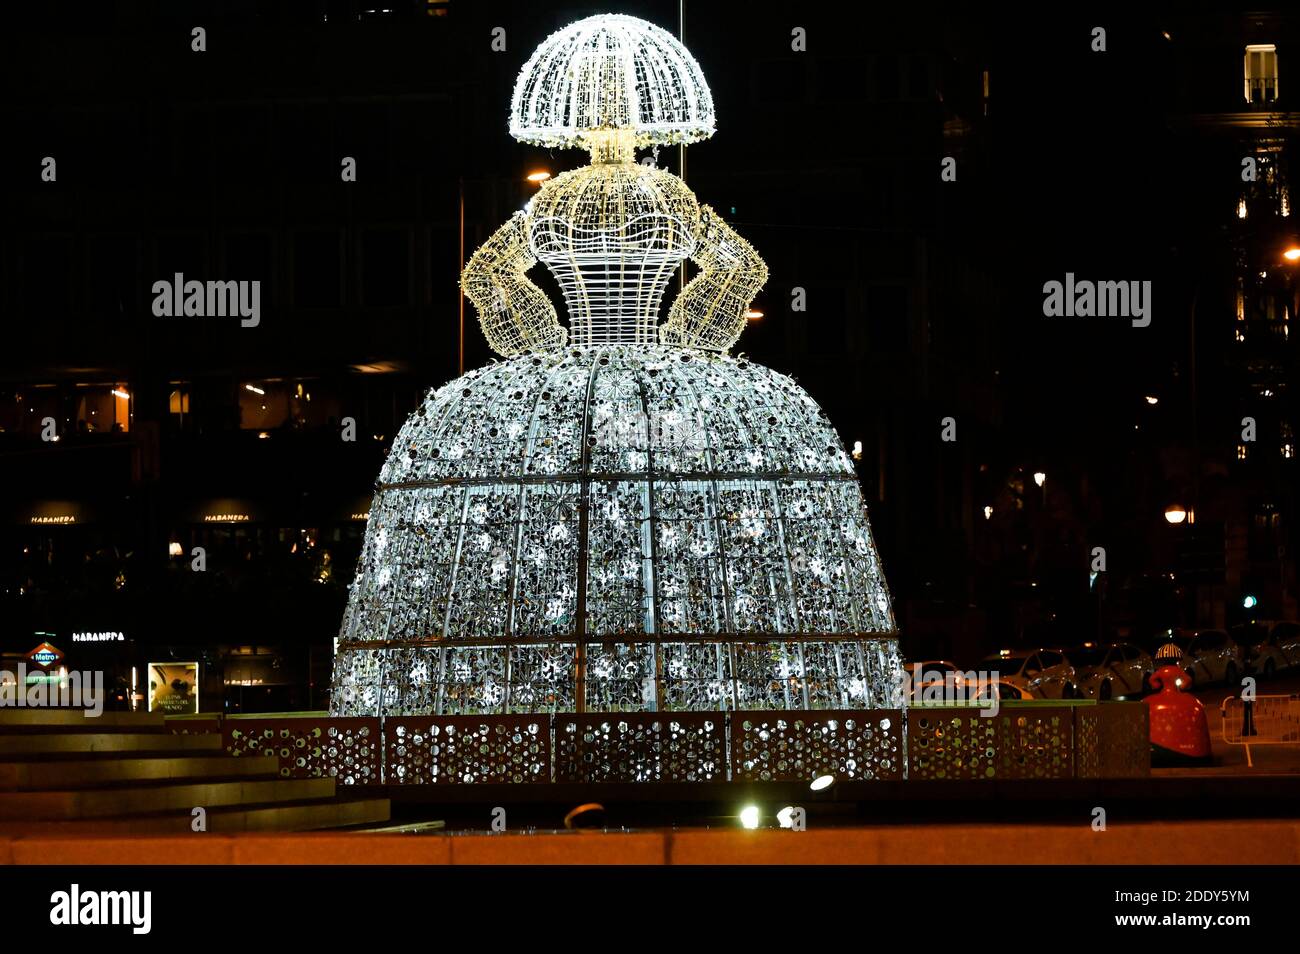 Madrid, Spanien. November 2020. Las Meninas Installation in der Plaza de Colon - Einschalten der traditionellen Weihafterts Beleuchtung in der Innenstadt. Madrid 11/26/2020 Quelle: dpa/Alamy Live News Stockfoto